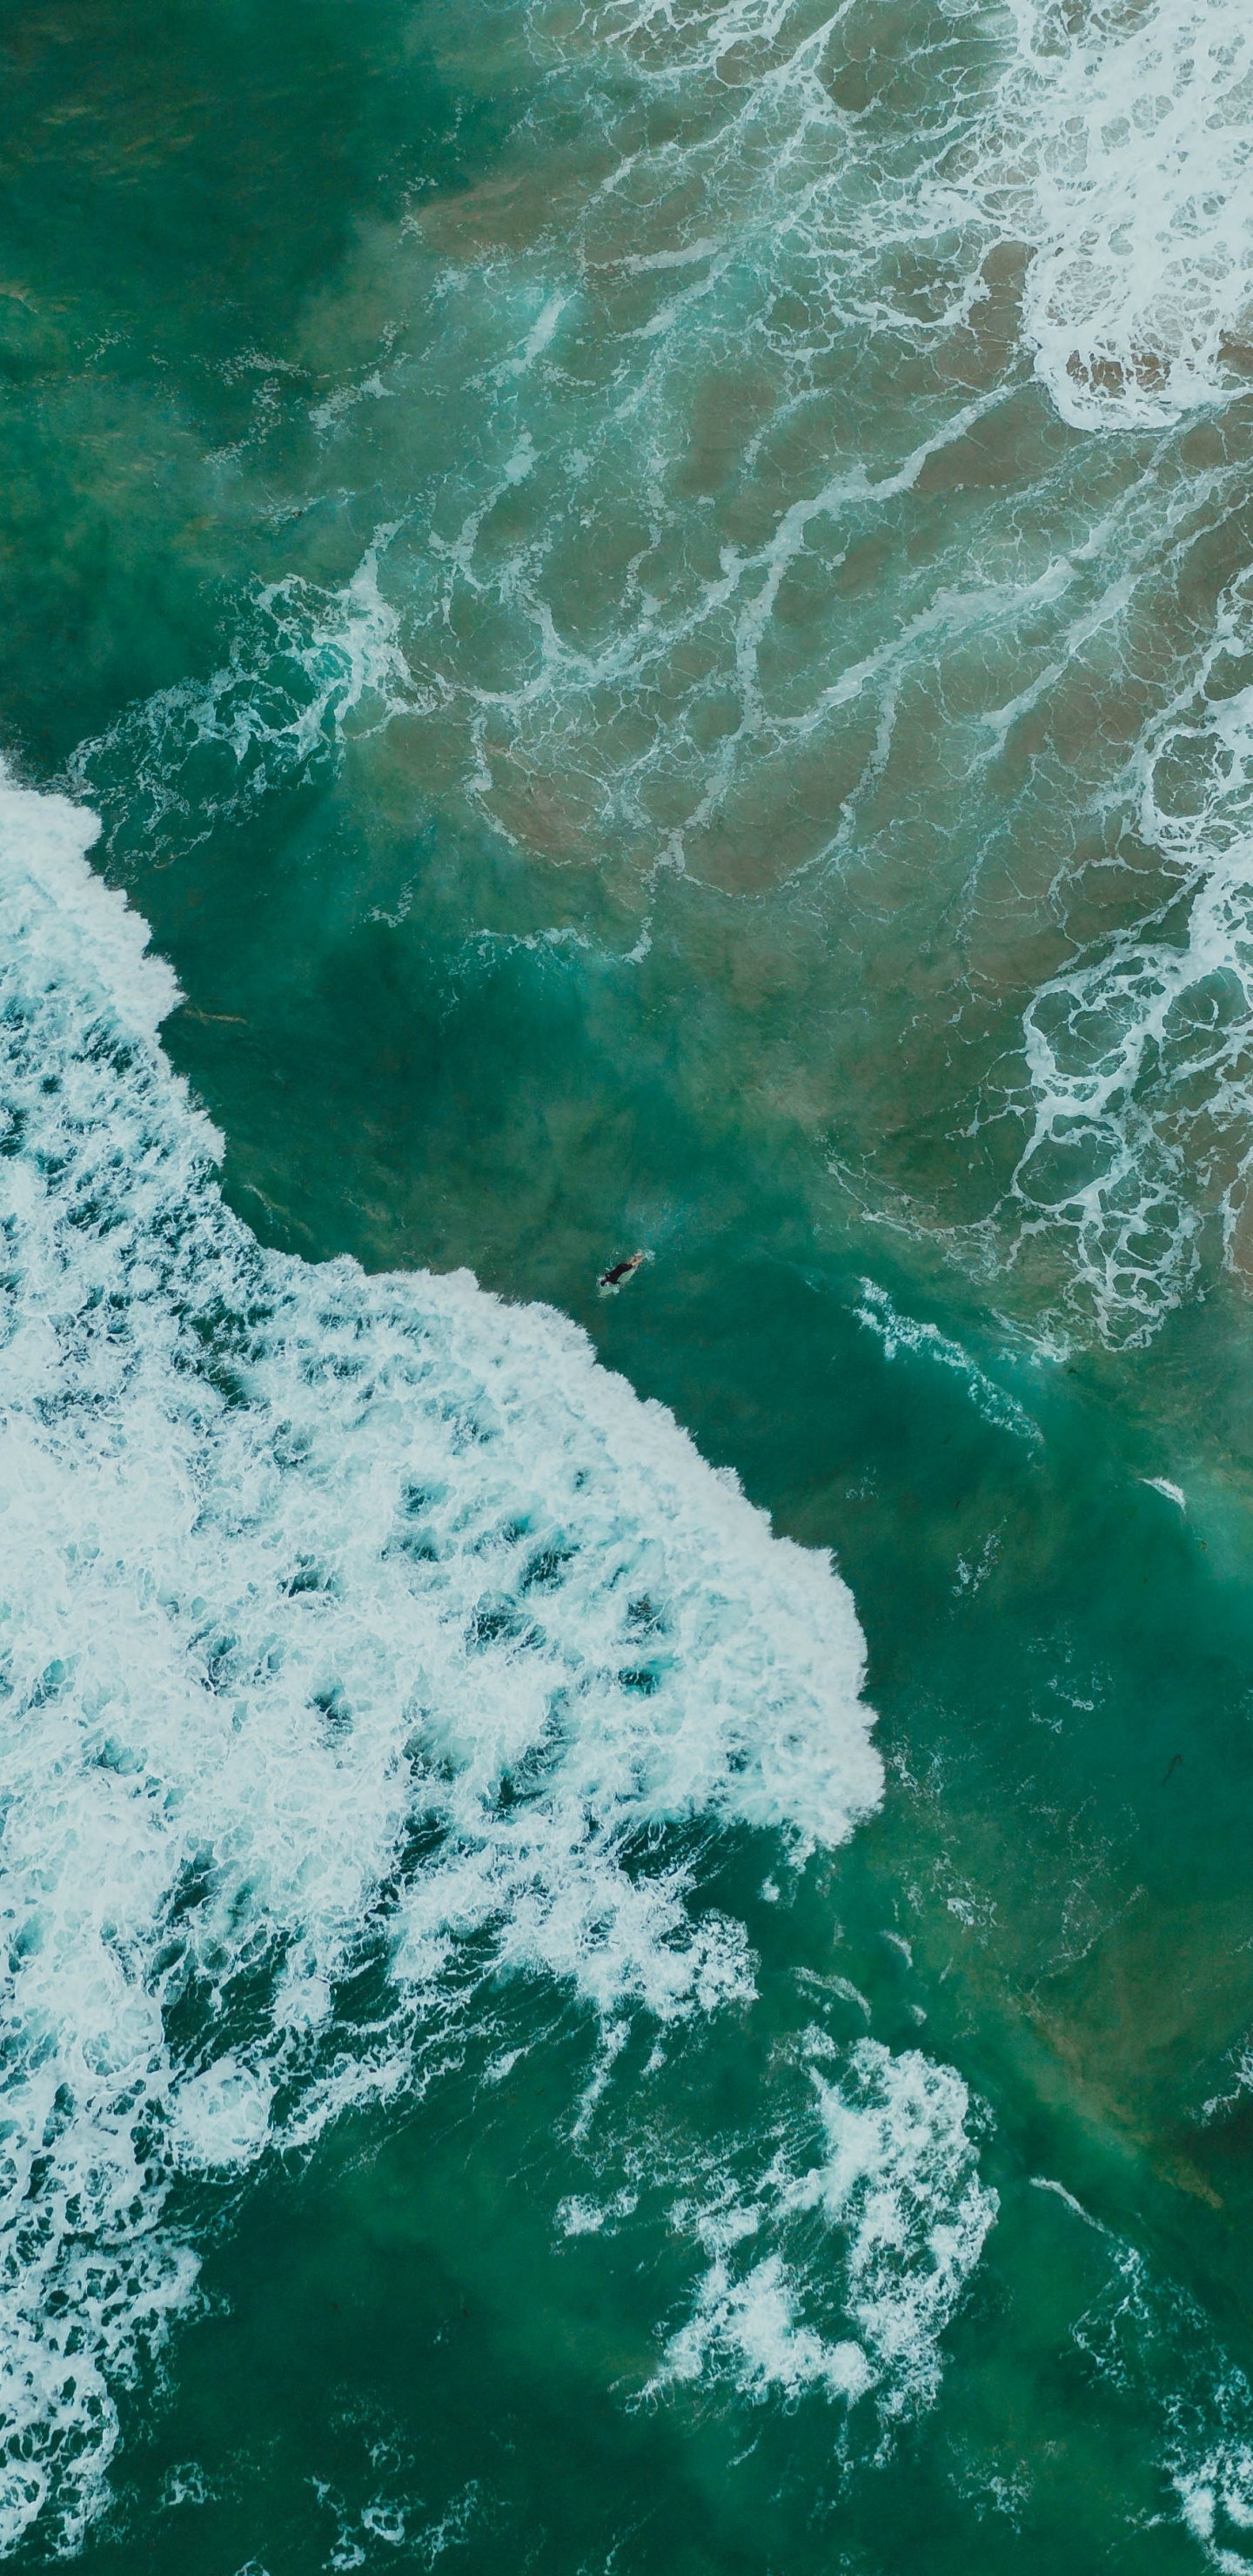 Oceano, Mar, el Viento de la Onda, Agua, Verde. Wallpaper in 1440x2960 Resolution